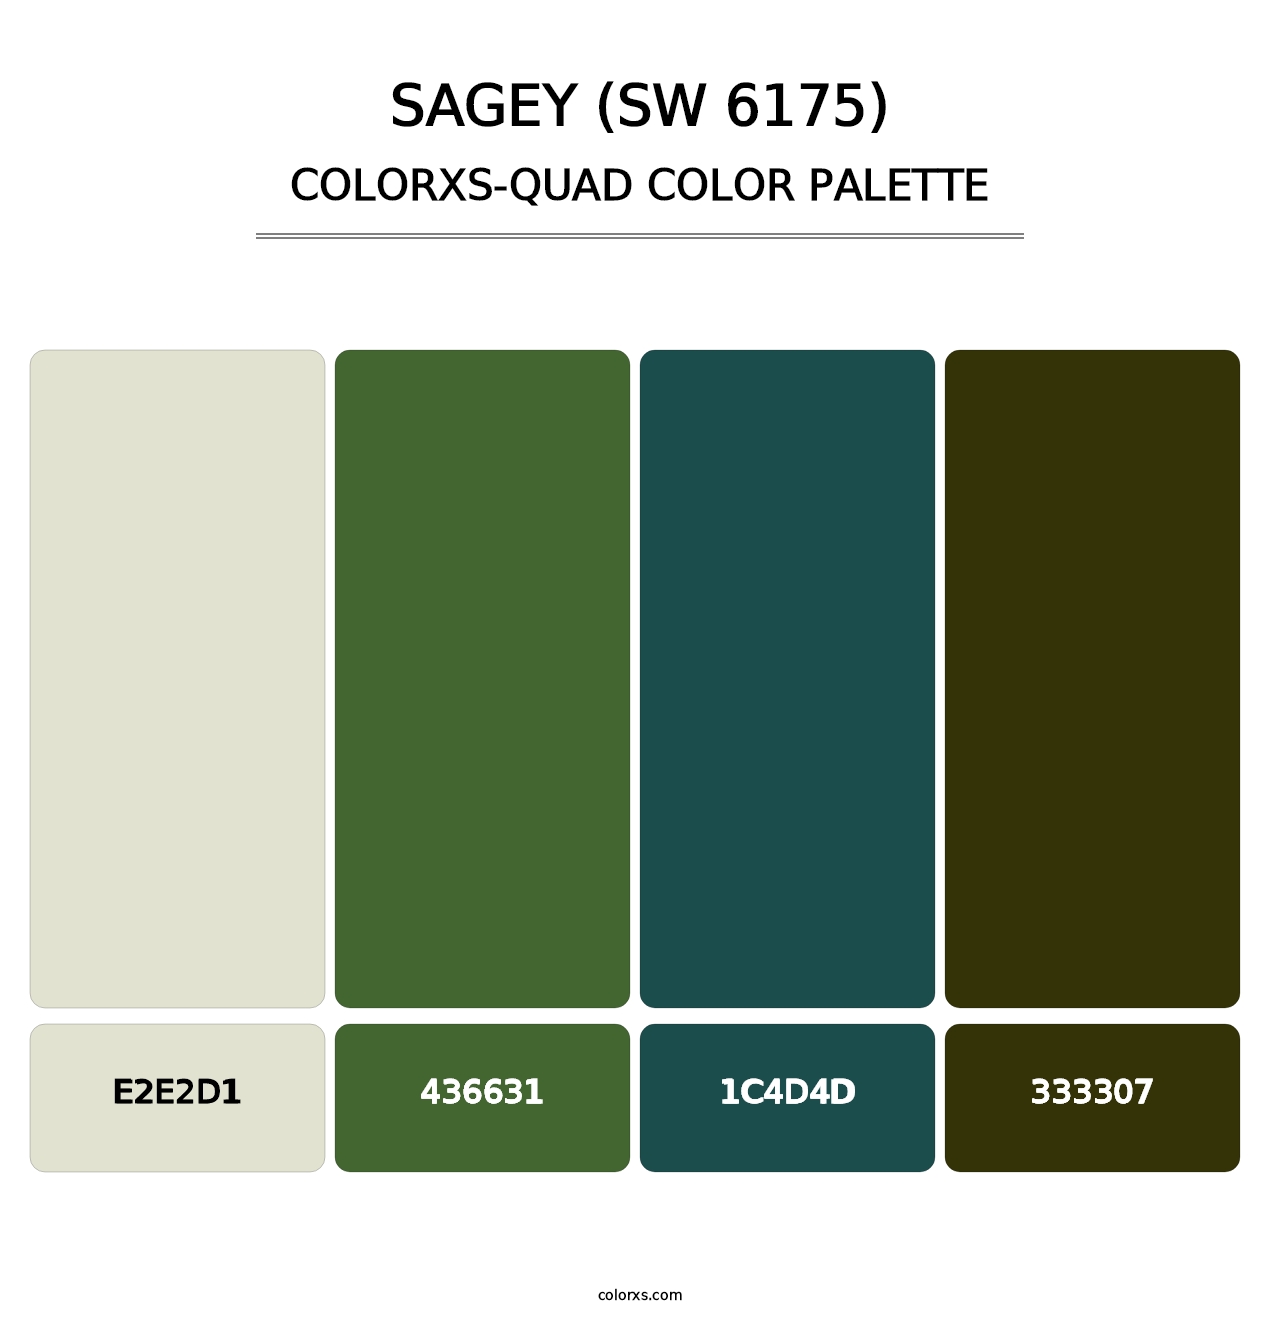 Sagey (SW 6175) - Colorxs Quad Palette